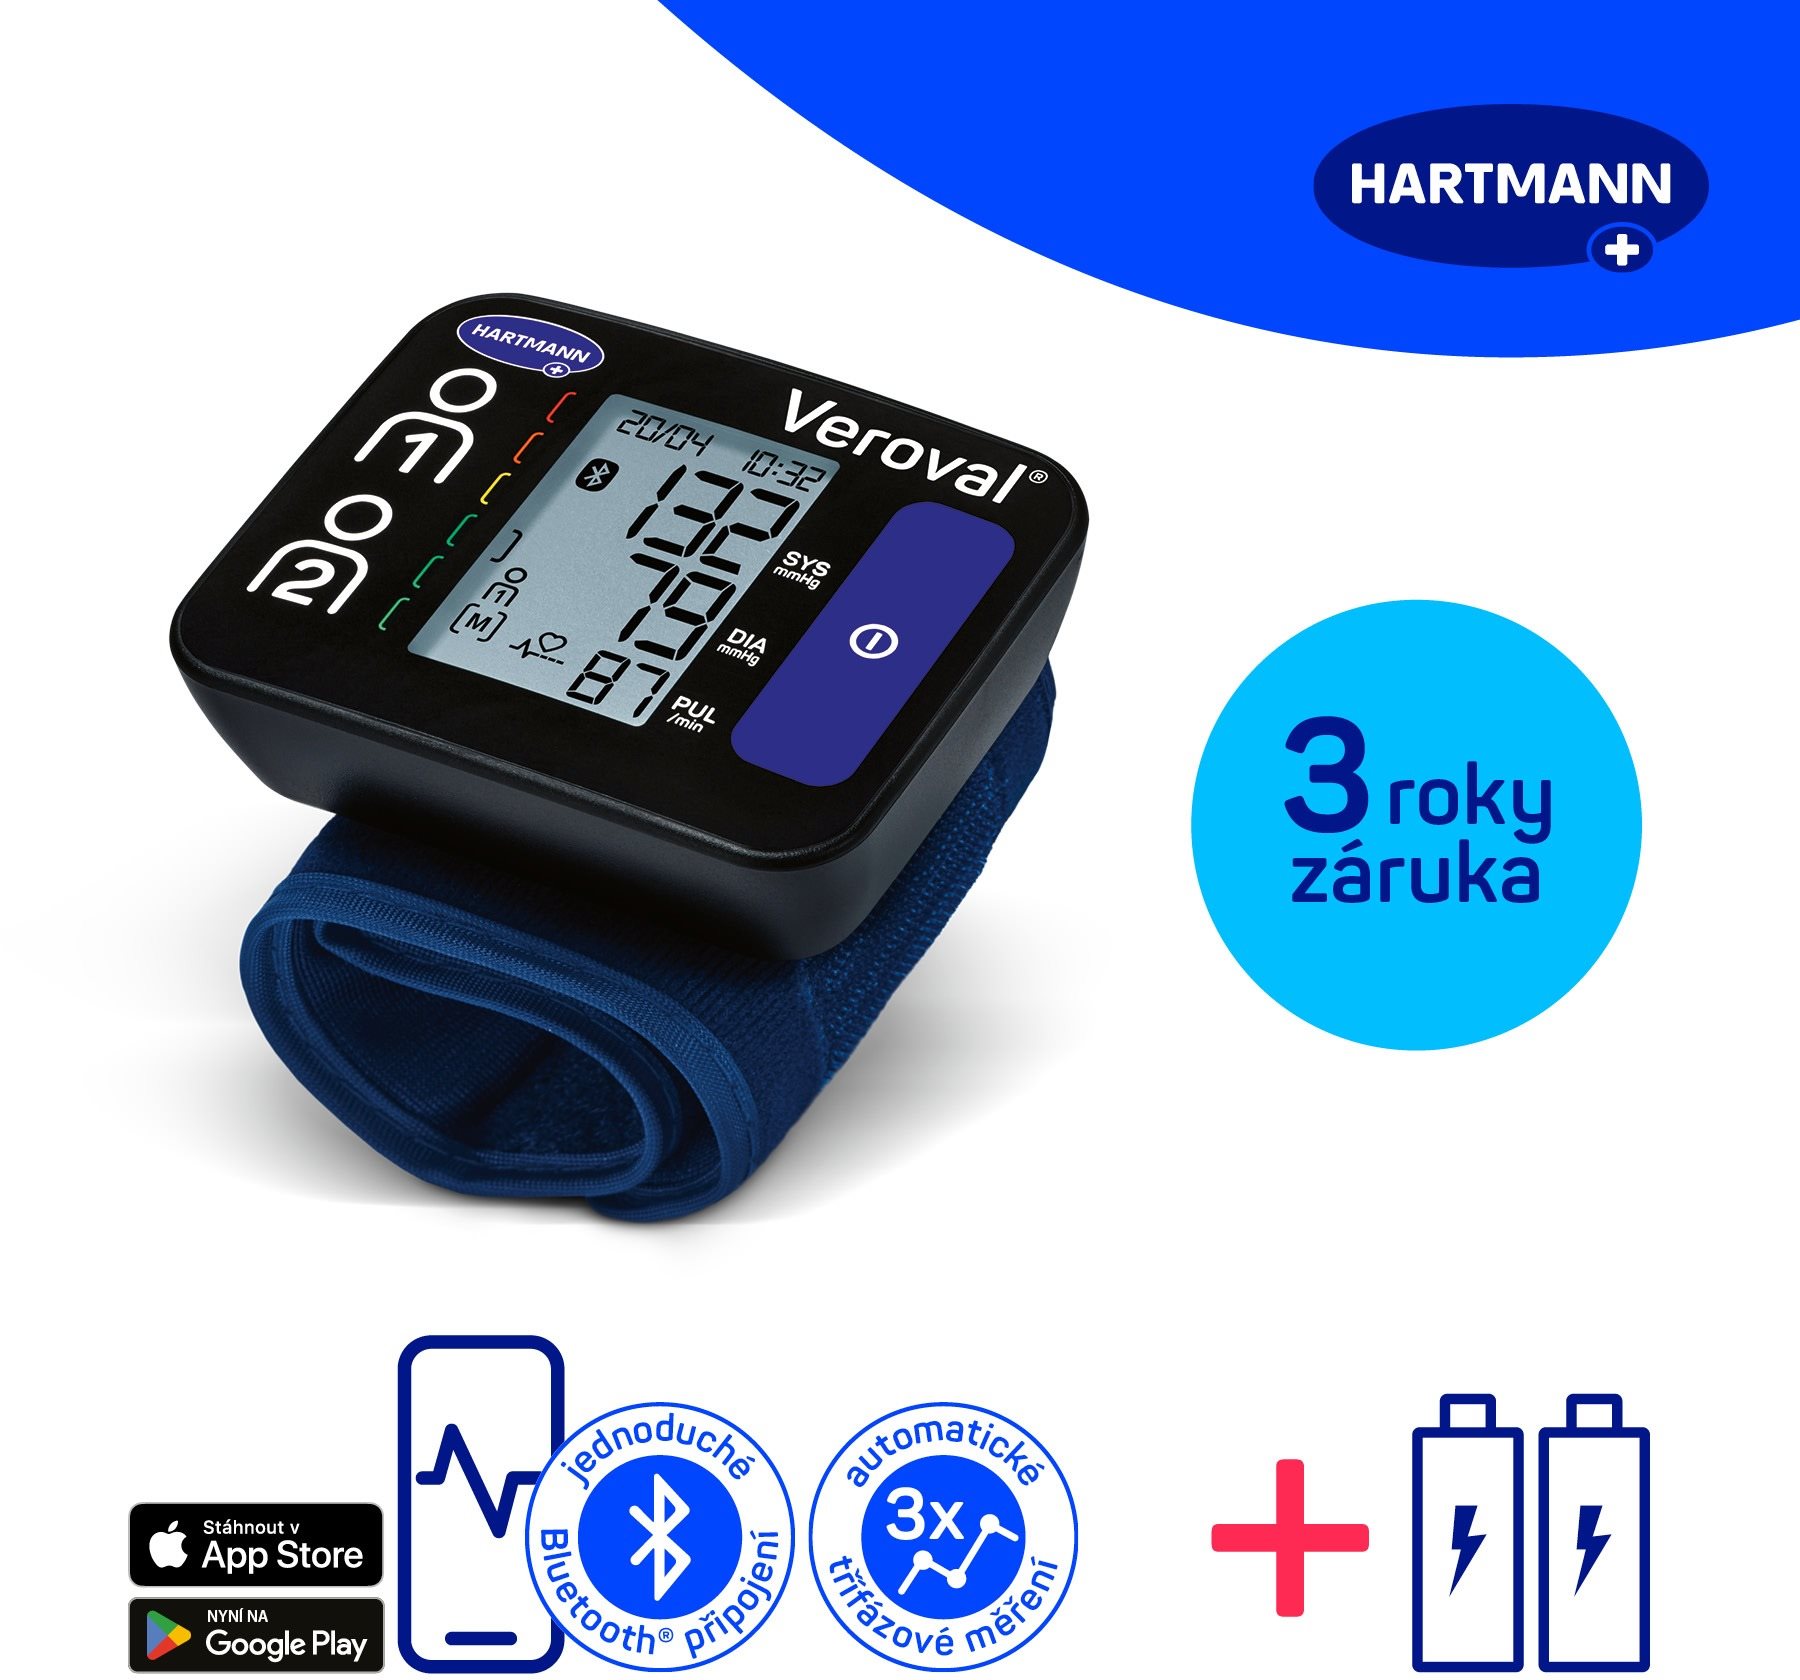 HARTMANN Veroval Compact + Connect, csuklós, Bluetooth csatlakozás, 3 év garancia